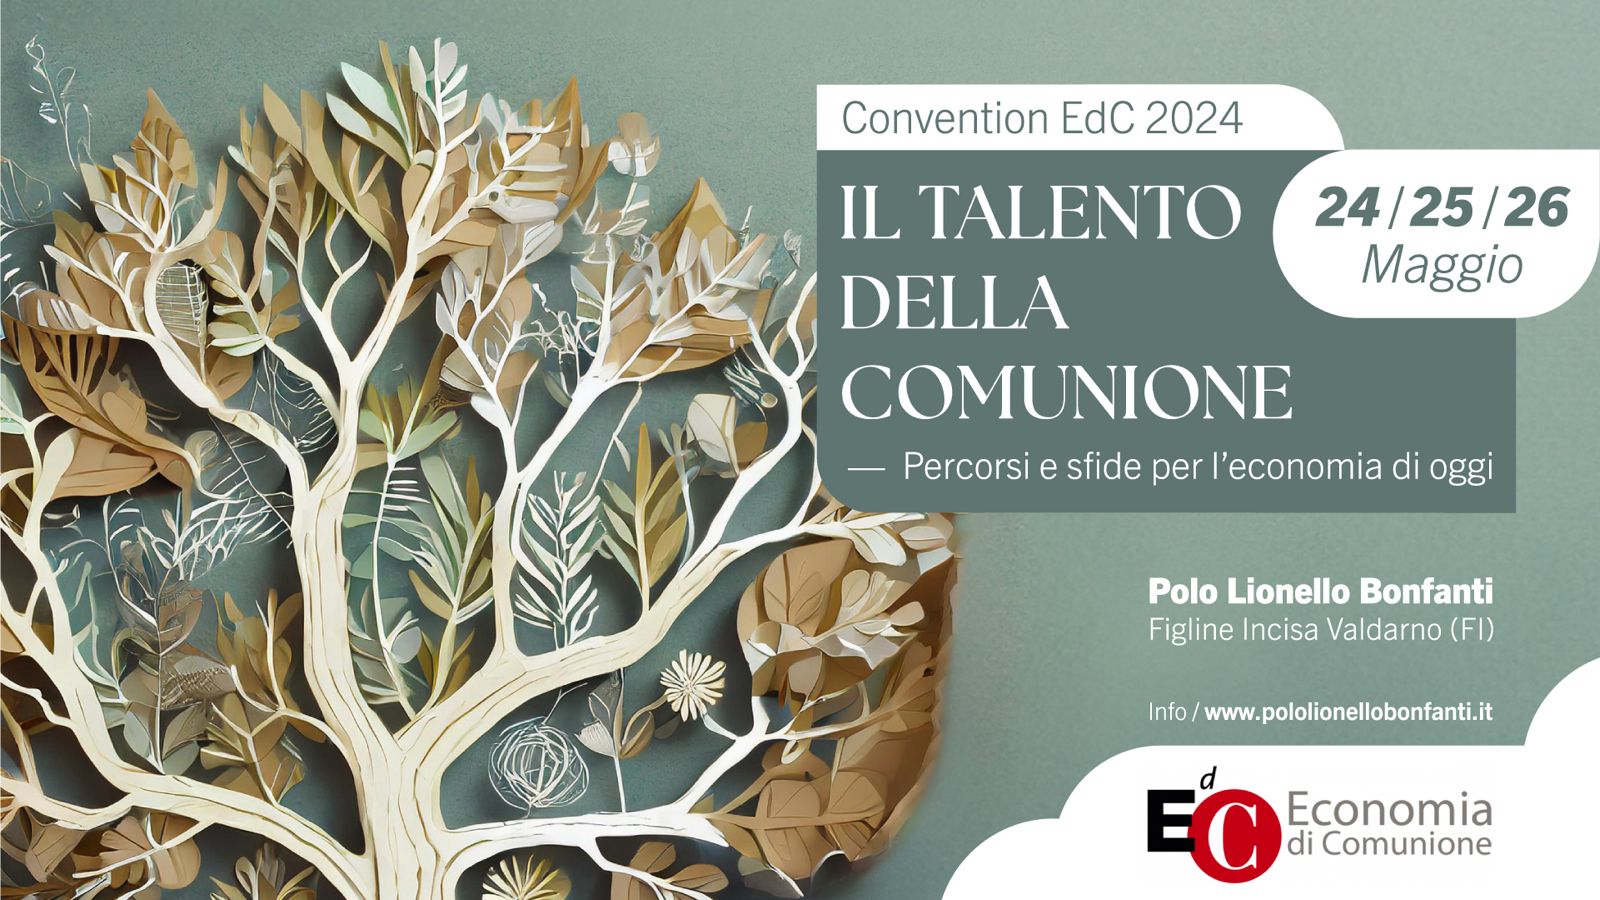 Convention EdC Italia il 24-26 maggio 2024